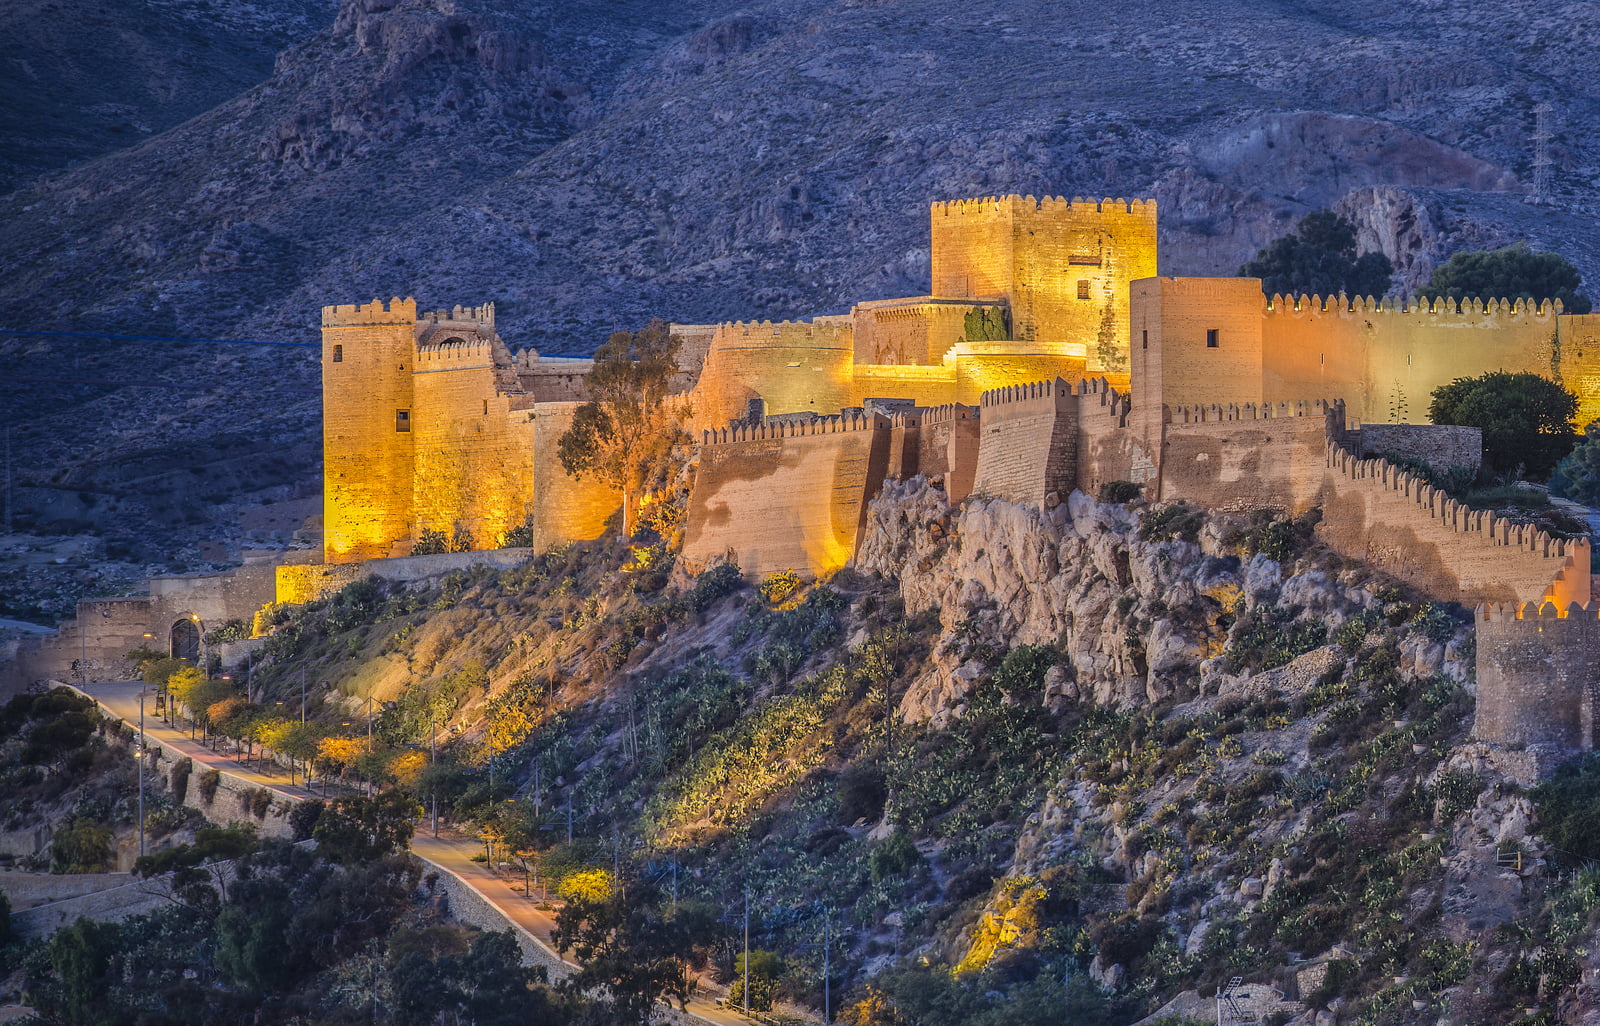 Descubre la magia de la Alcazaba de Almería: Impresionante fortaleza con vistas panorámicas del Mediterráneo.